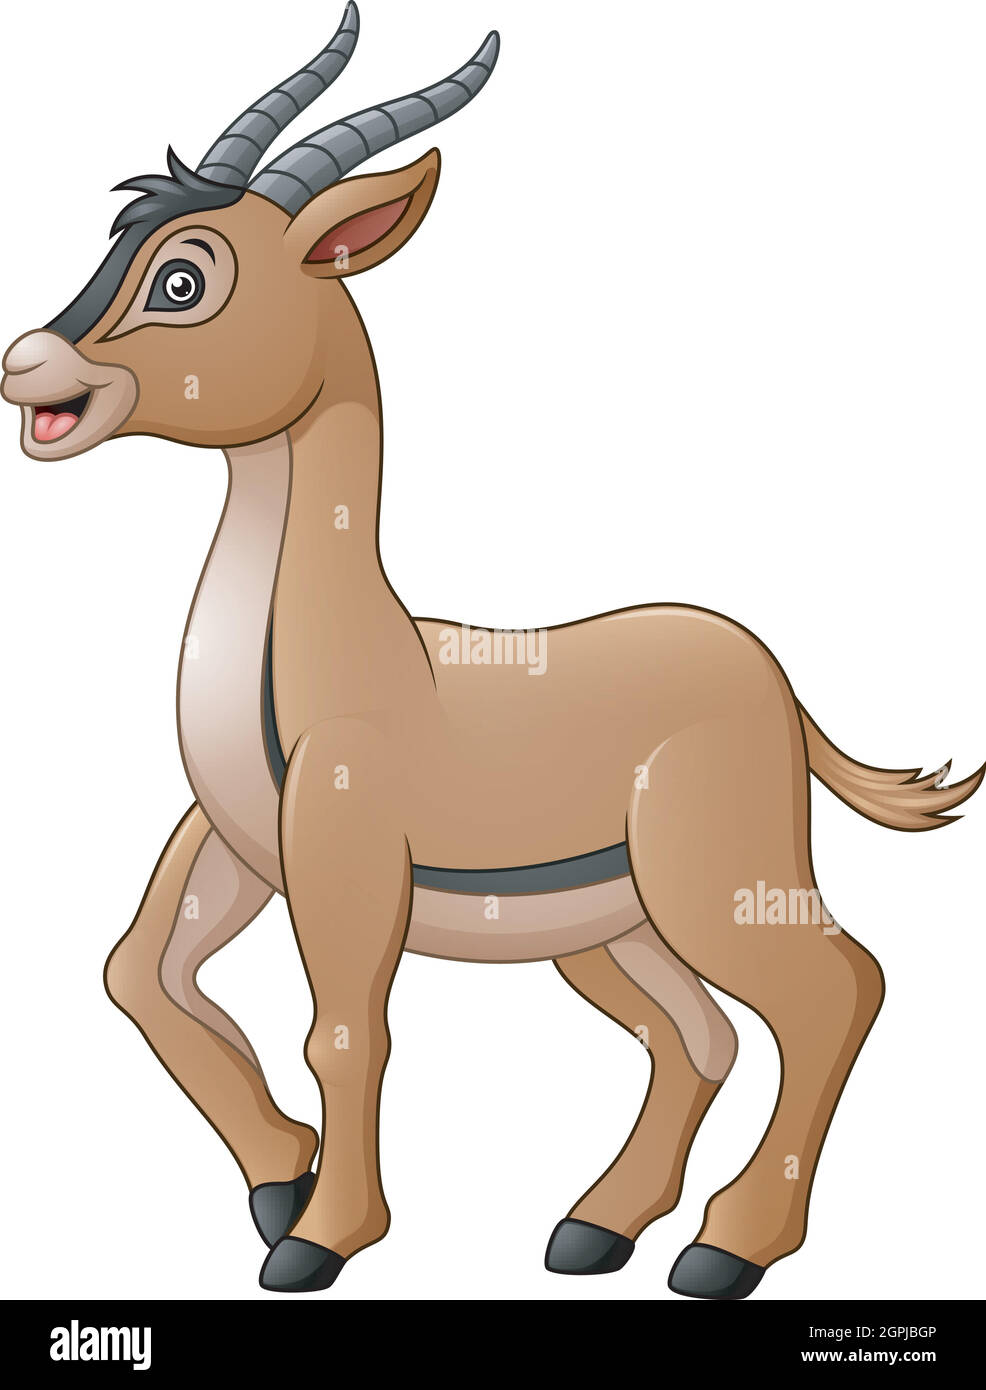 Cute antelope cartoon Stock Vector